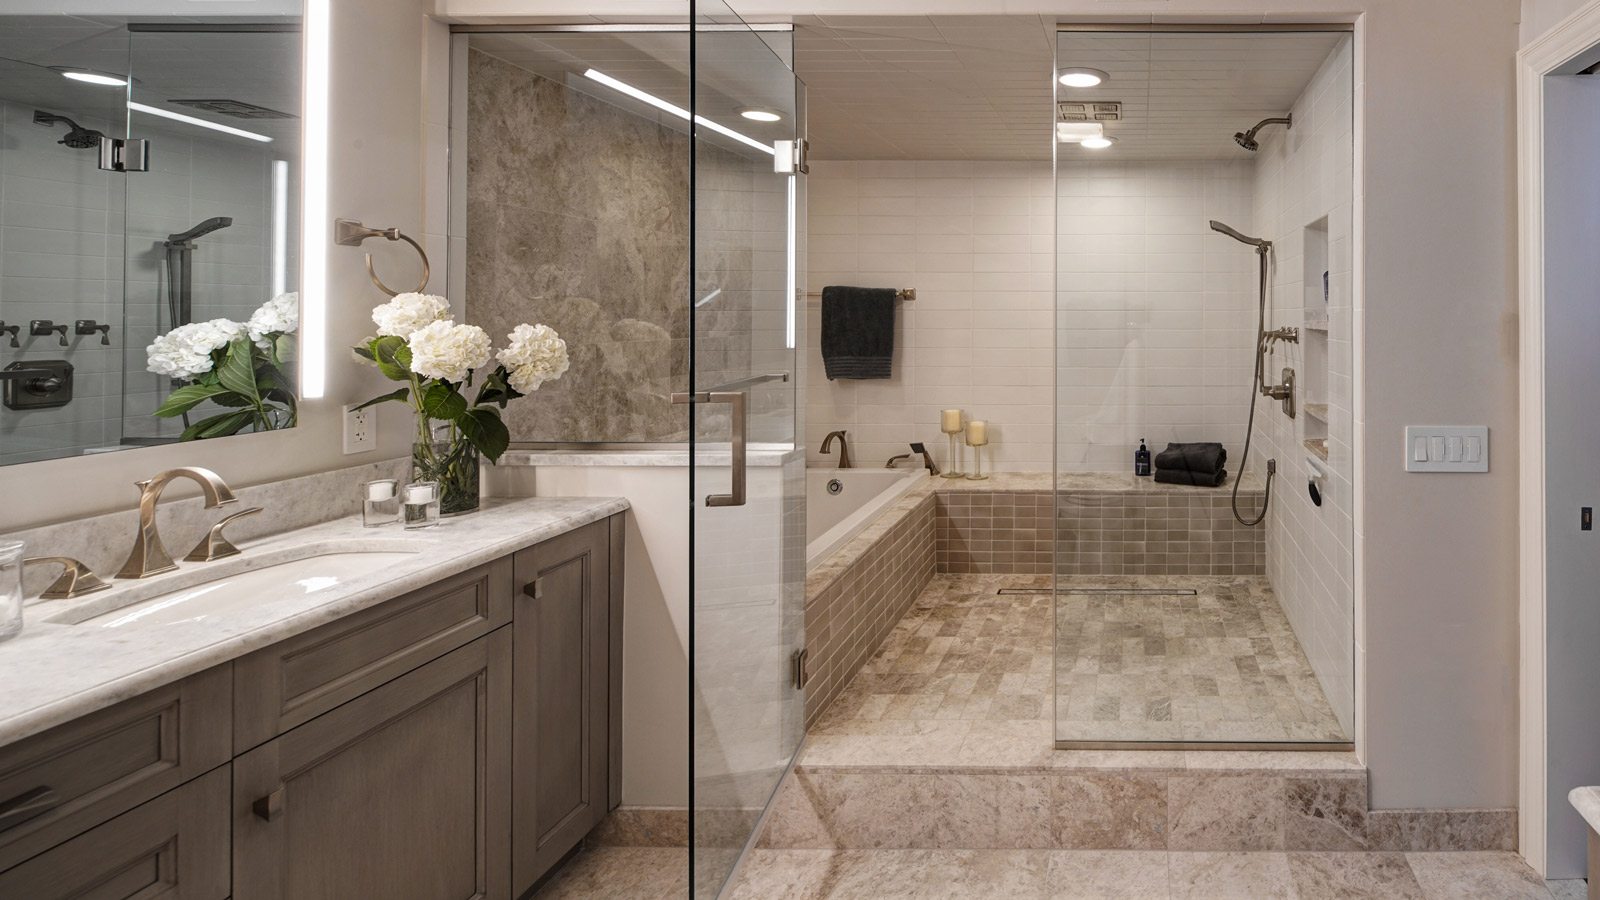 Chicago Condo Master Bath Renovation - Drury Design